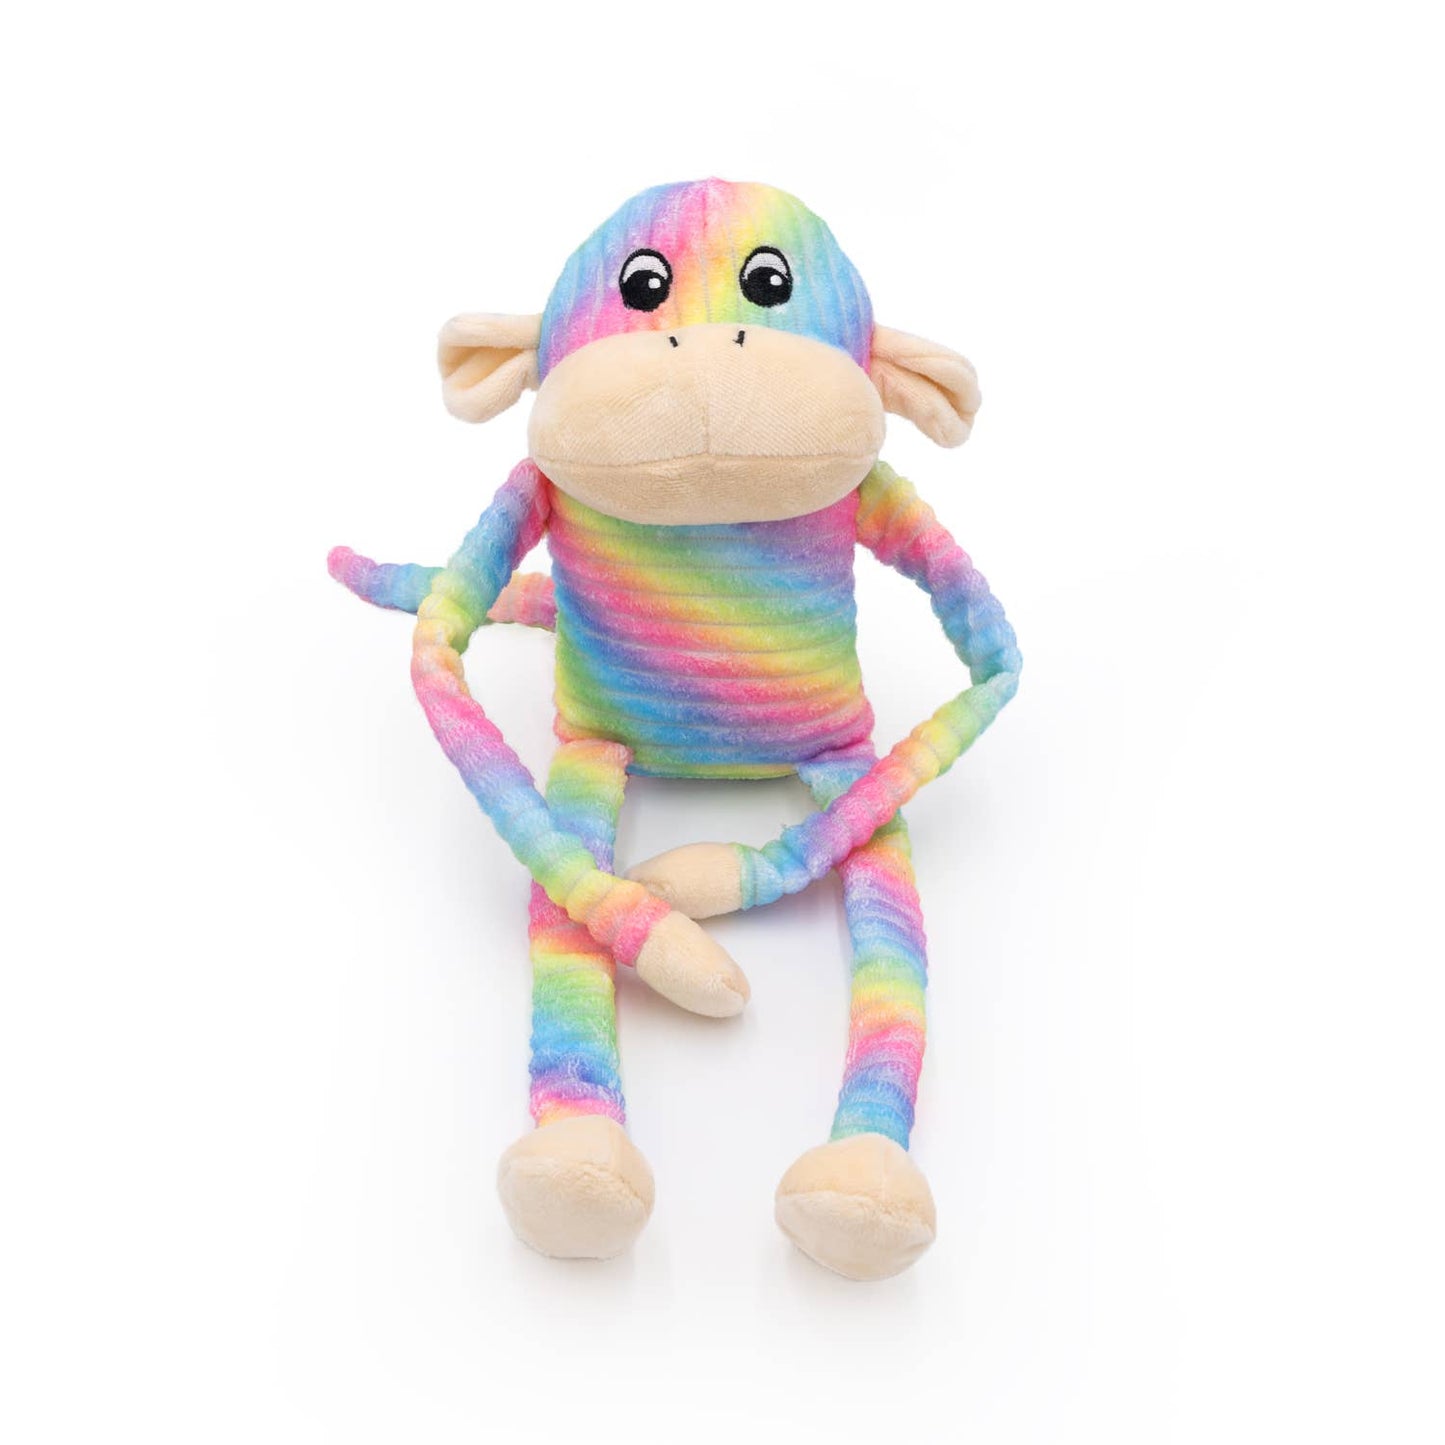 Spencer the Crinkle Monkey - Large Rainbow